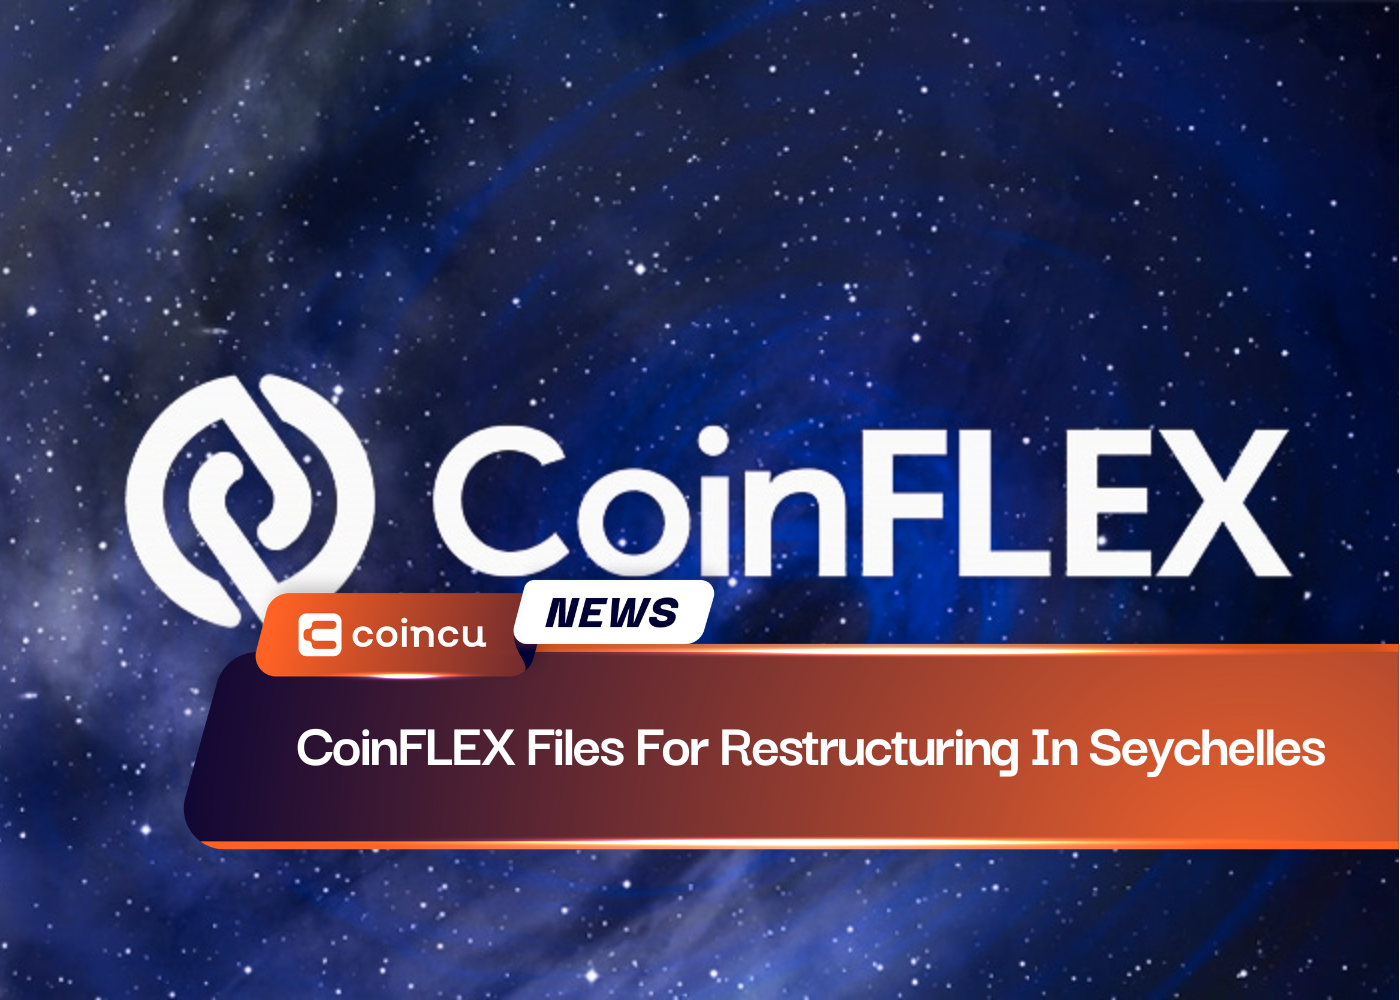 CoinFLEX dépose un dossier de restructuration aux Seychelles